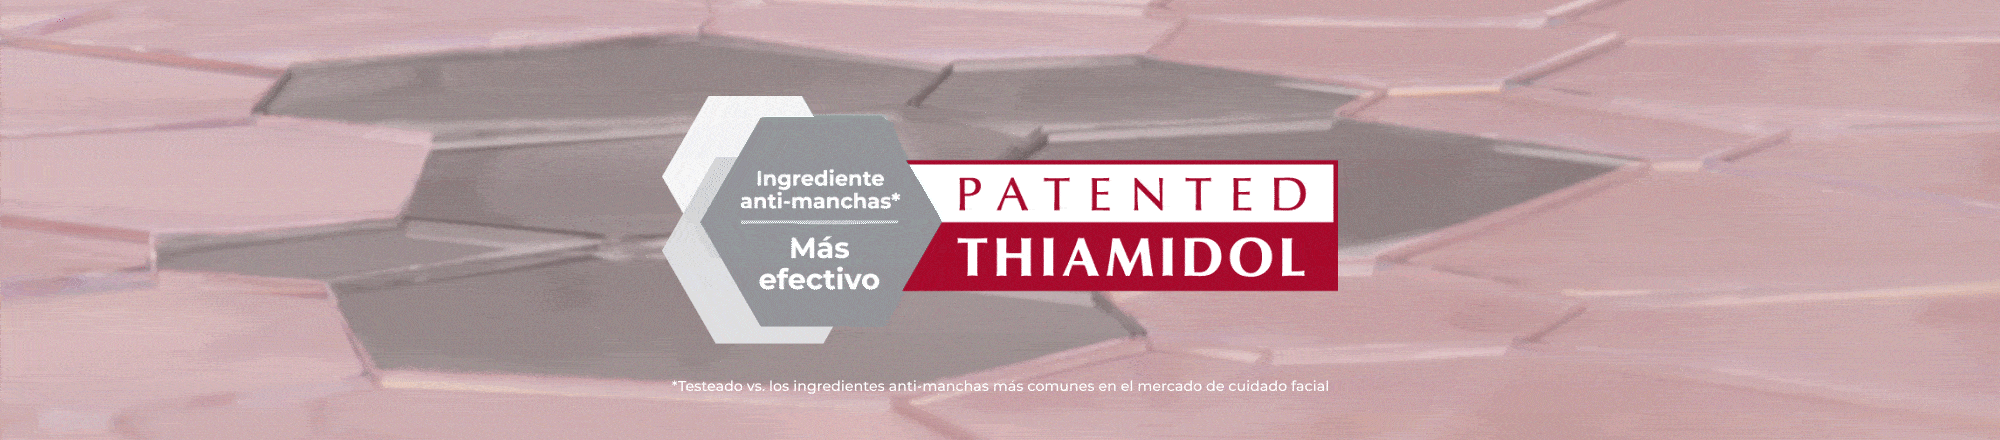 Thiamidol: ingrediente eficaz y patentado que actúa en la raíz de la hiperpigmentación